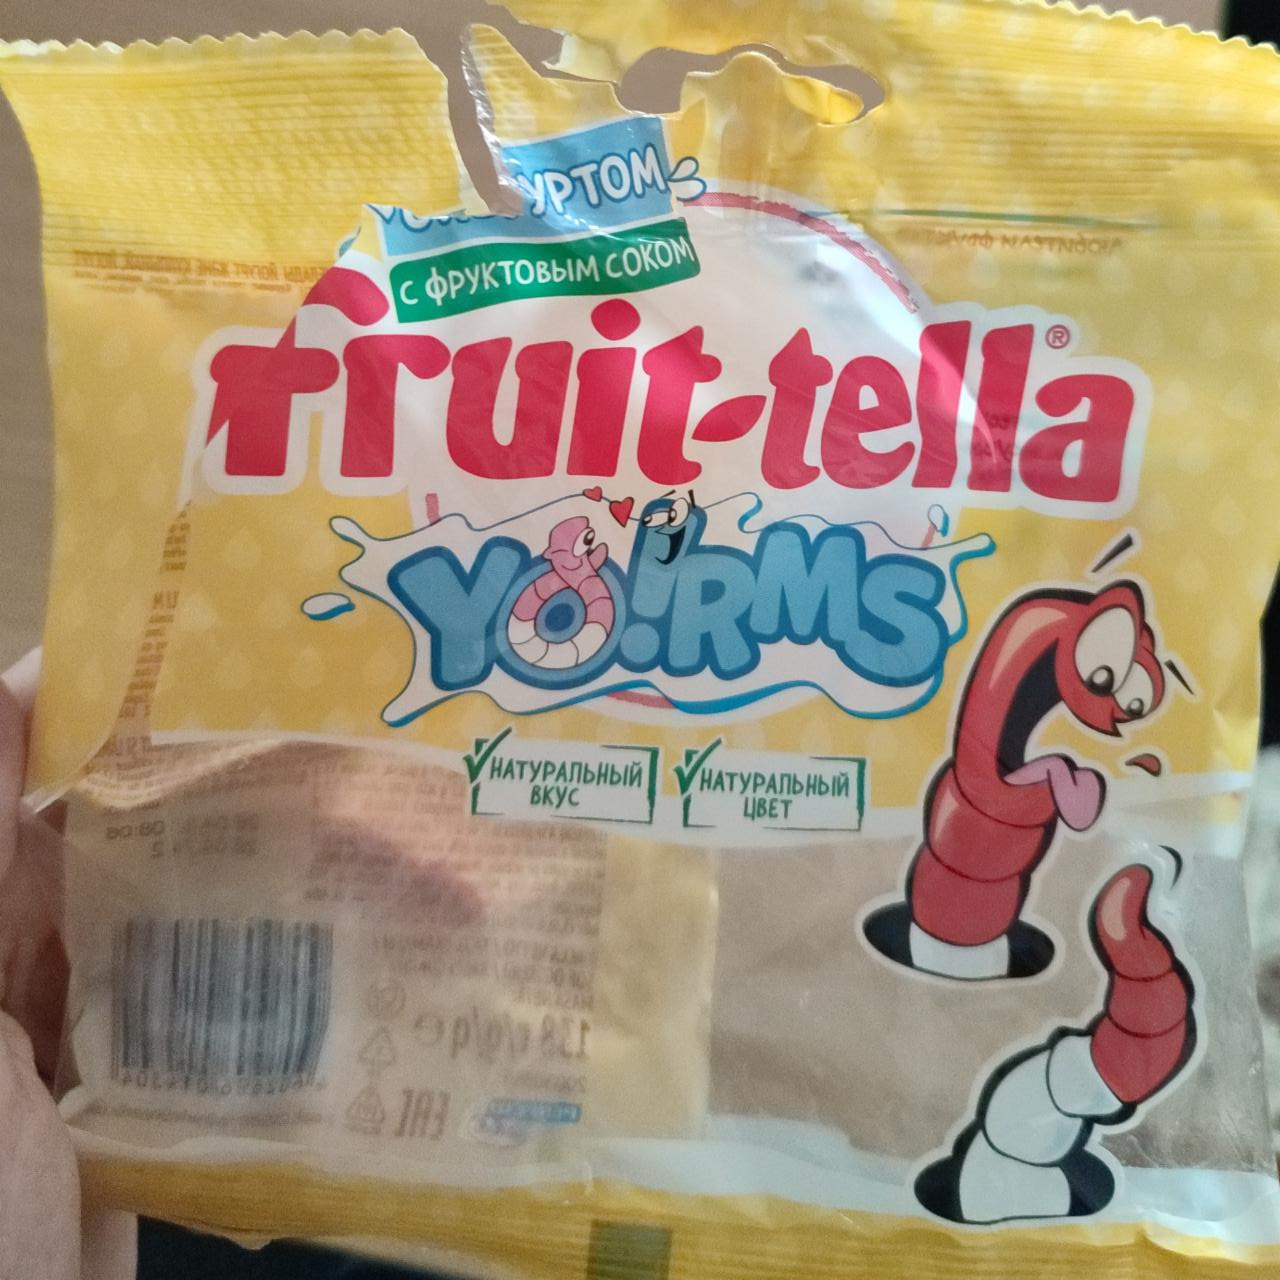 Фото - Мармелад с йогуртом yo!rms Fruittella